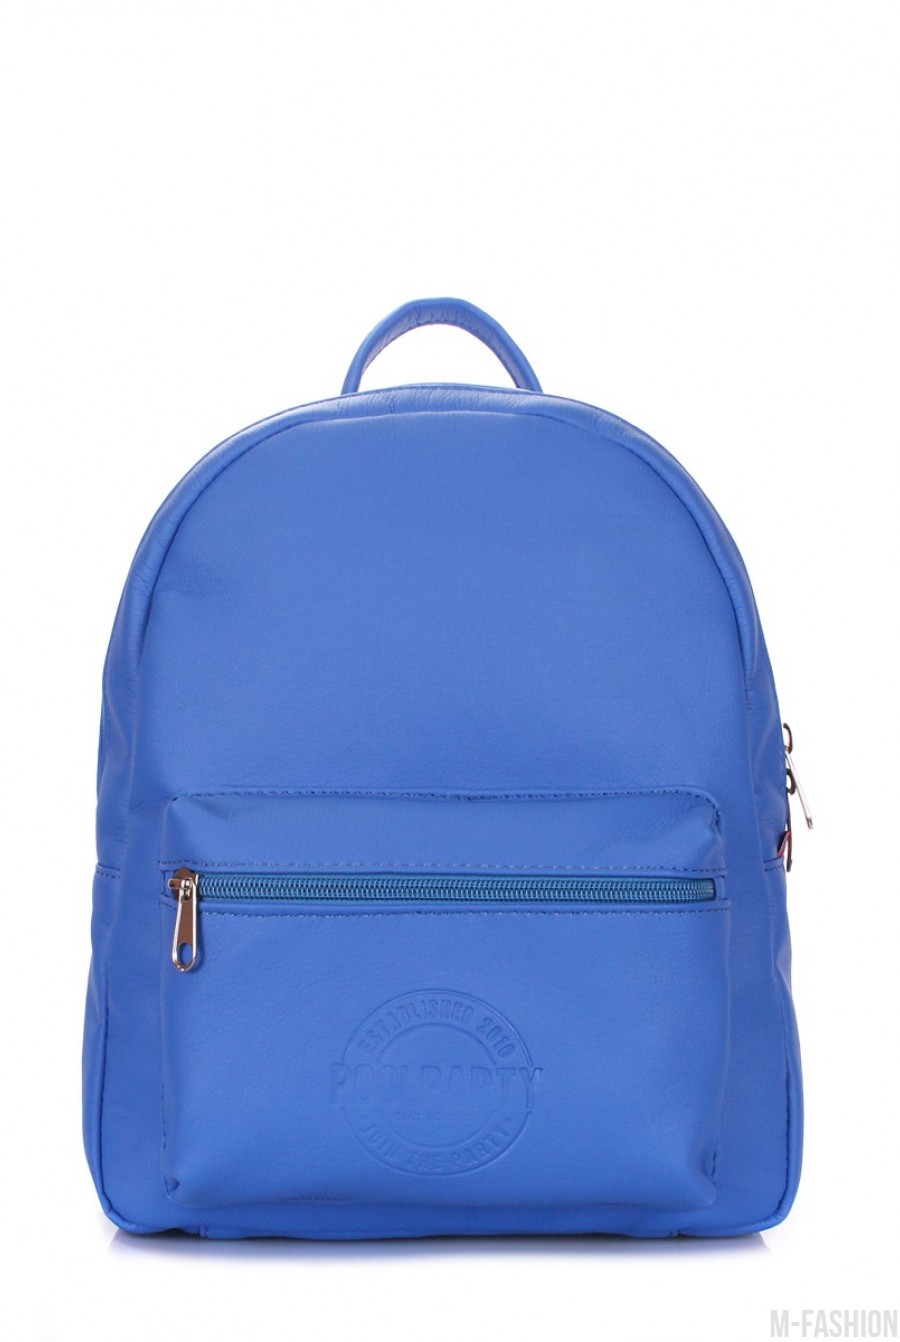 Синий рюкзак с накладными карманами - Фото 1